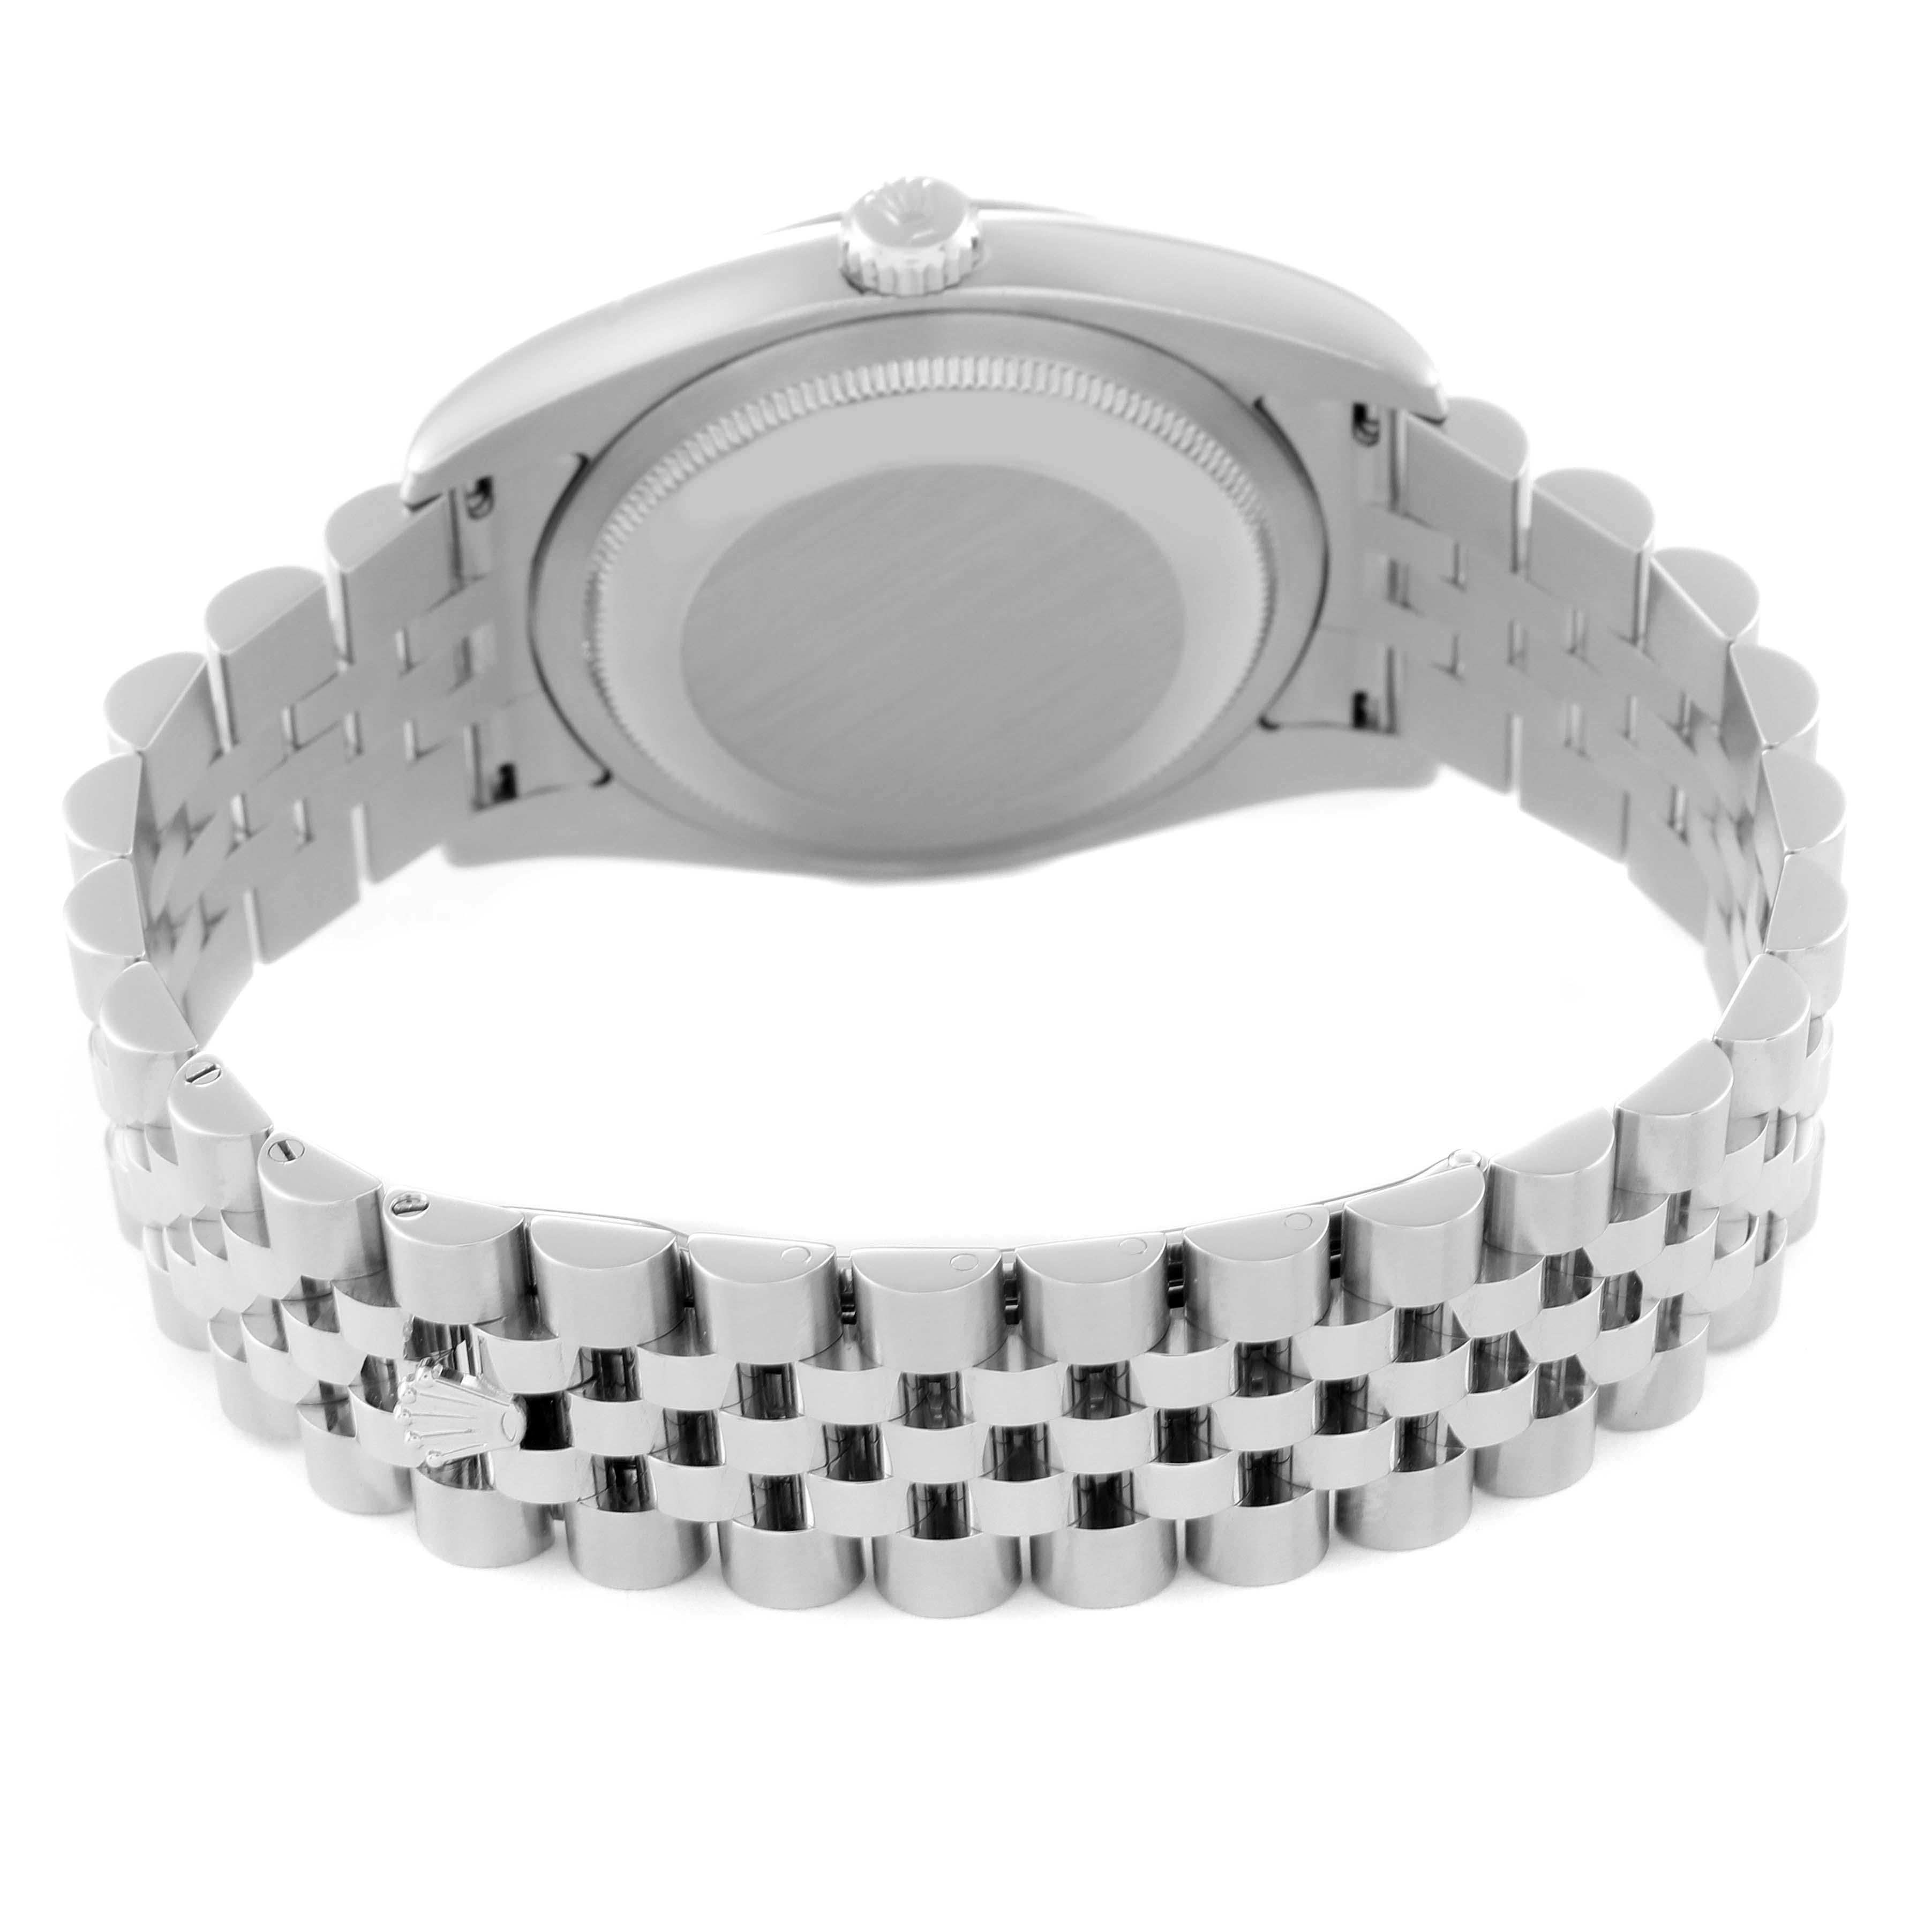 Rolex Datejust Steel White Gold Jubilee Bracelet Watch 116234 5